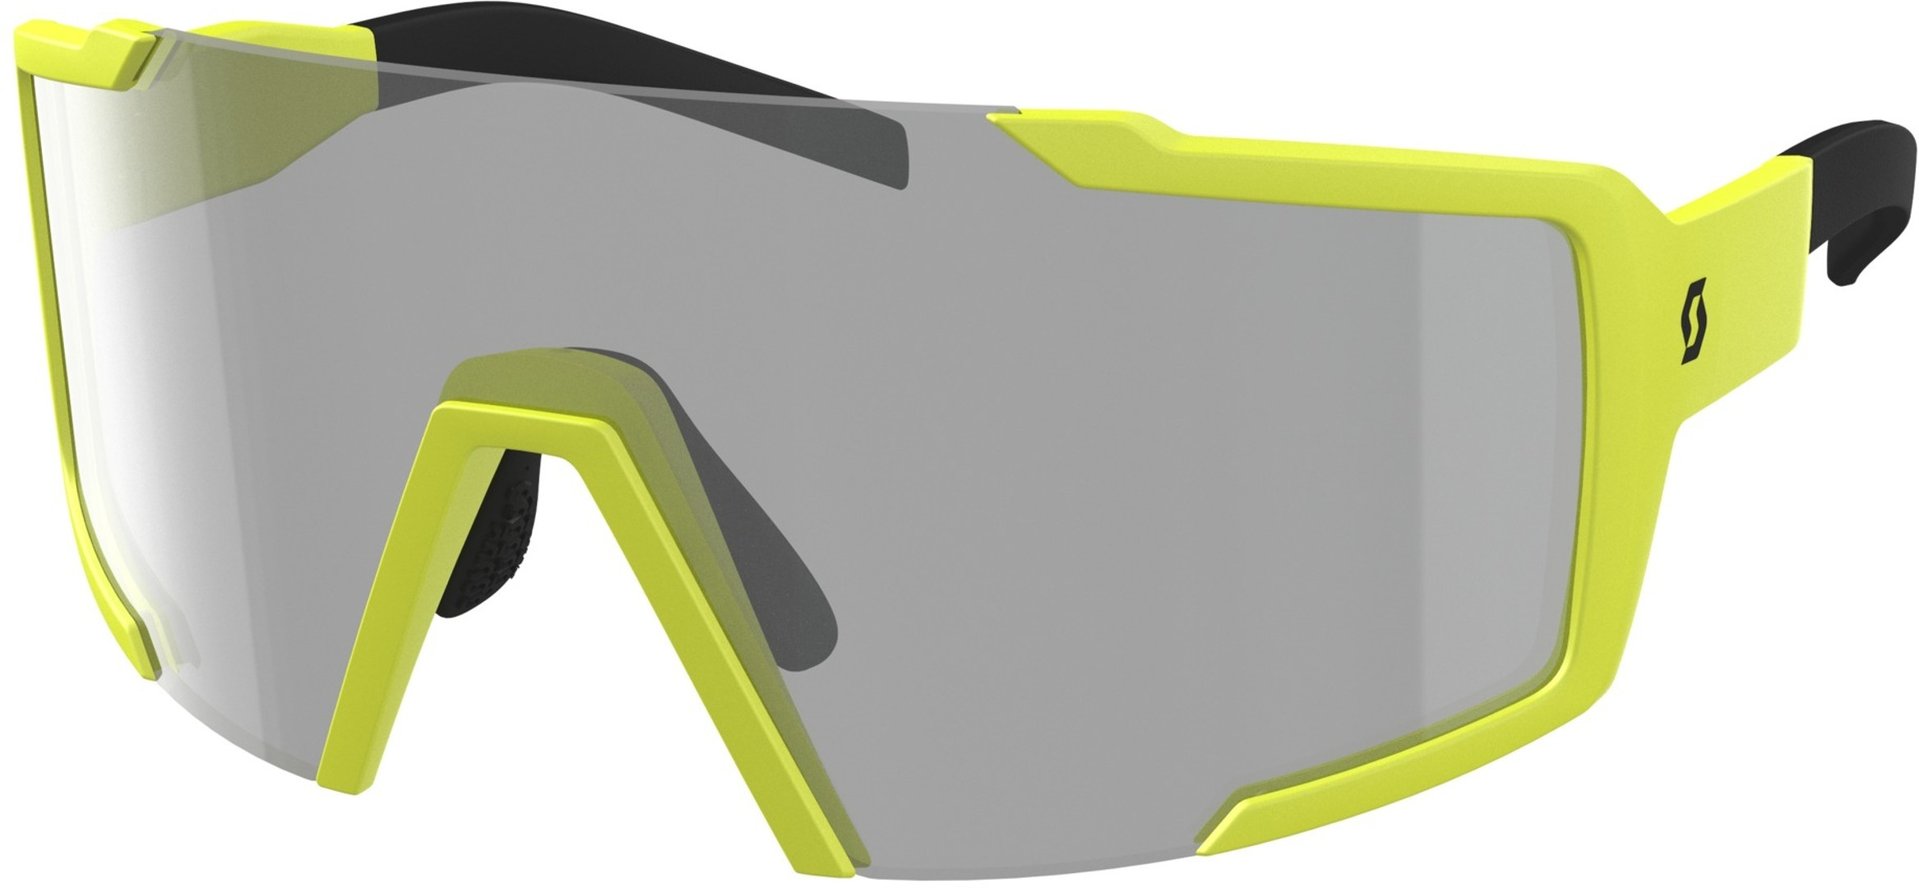 Солнцезащитные очки Scott Shield LS с регулируемой носовой накладкой, желтый/серый солнцезащитные очки желтый